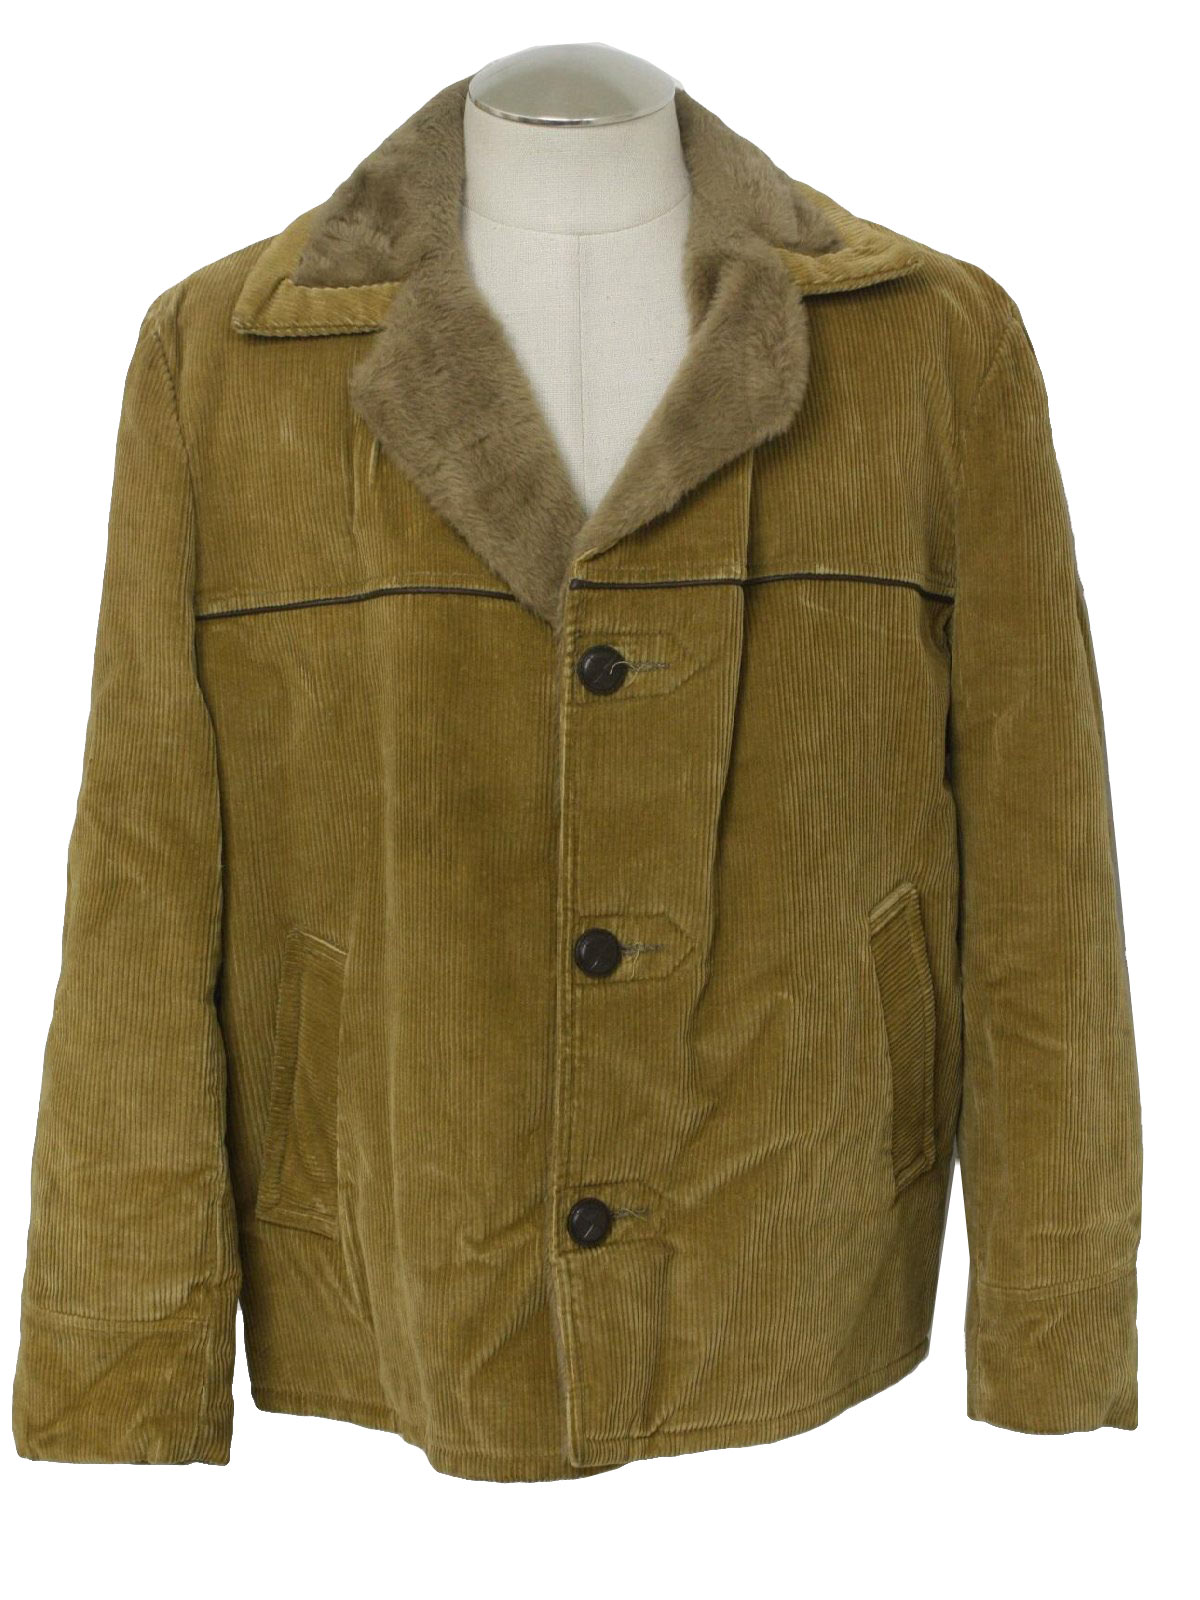 1970's Retro Jacket: 70s -Sears Oak brookk Sportswear- Mens honey tan ...